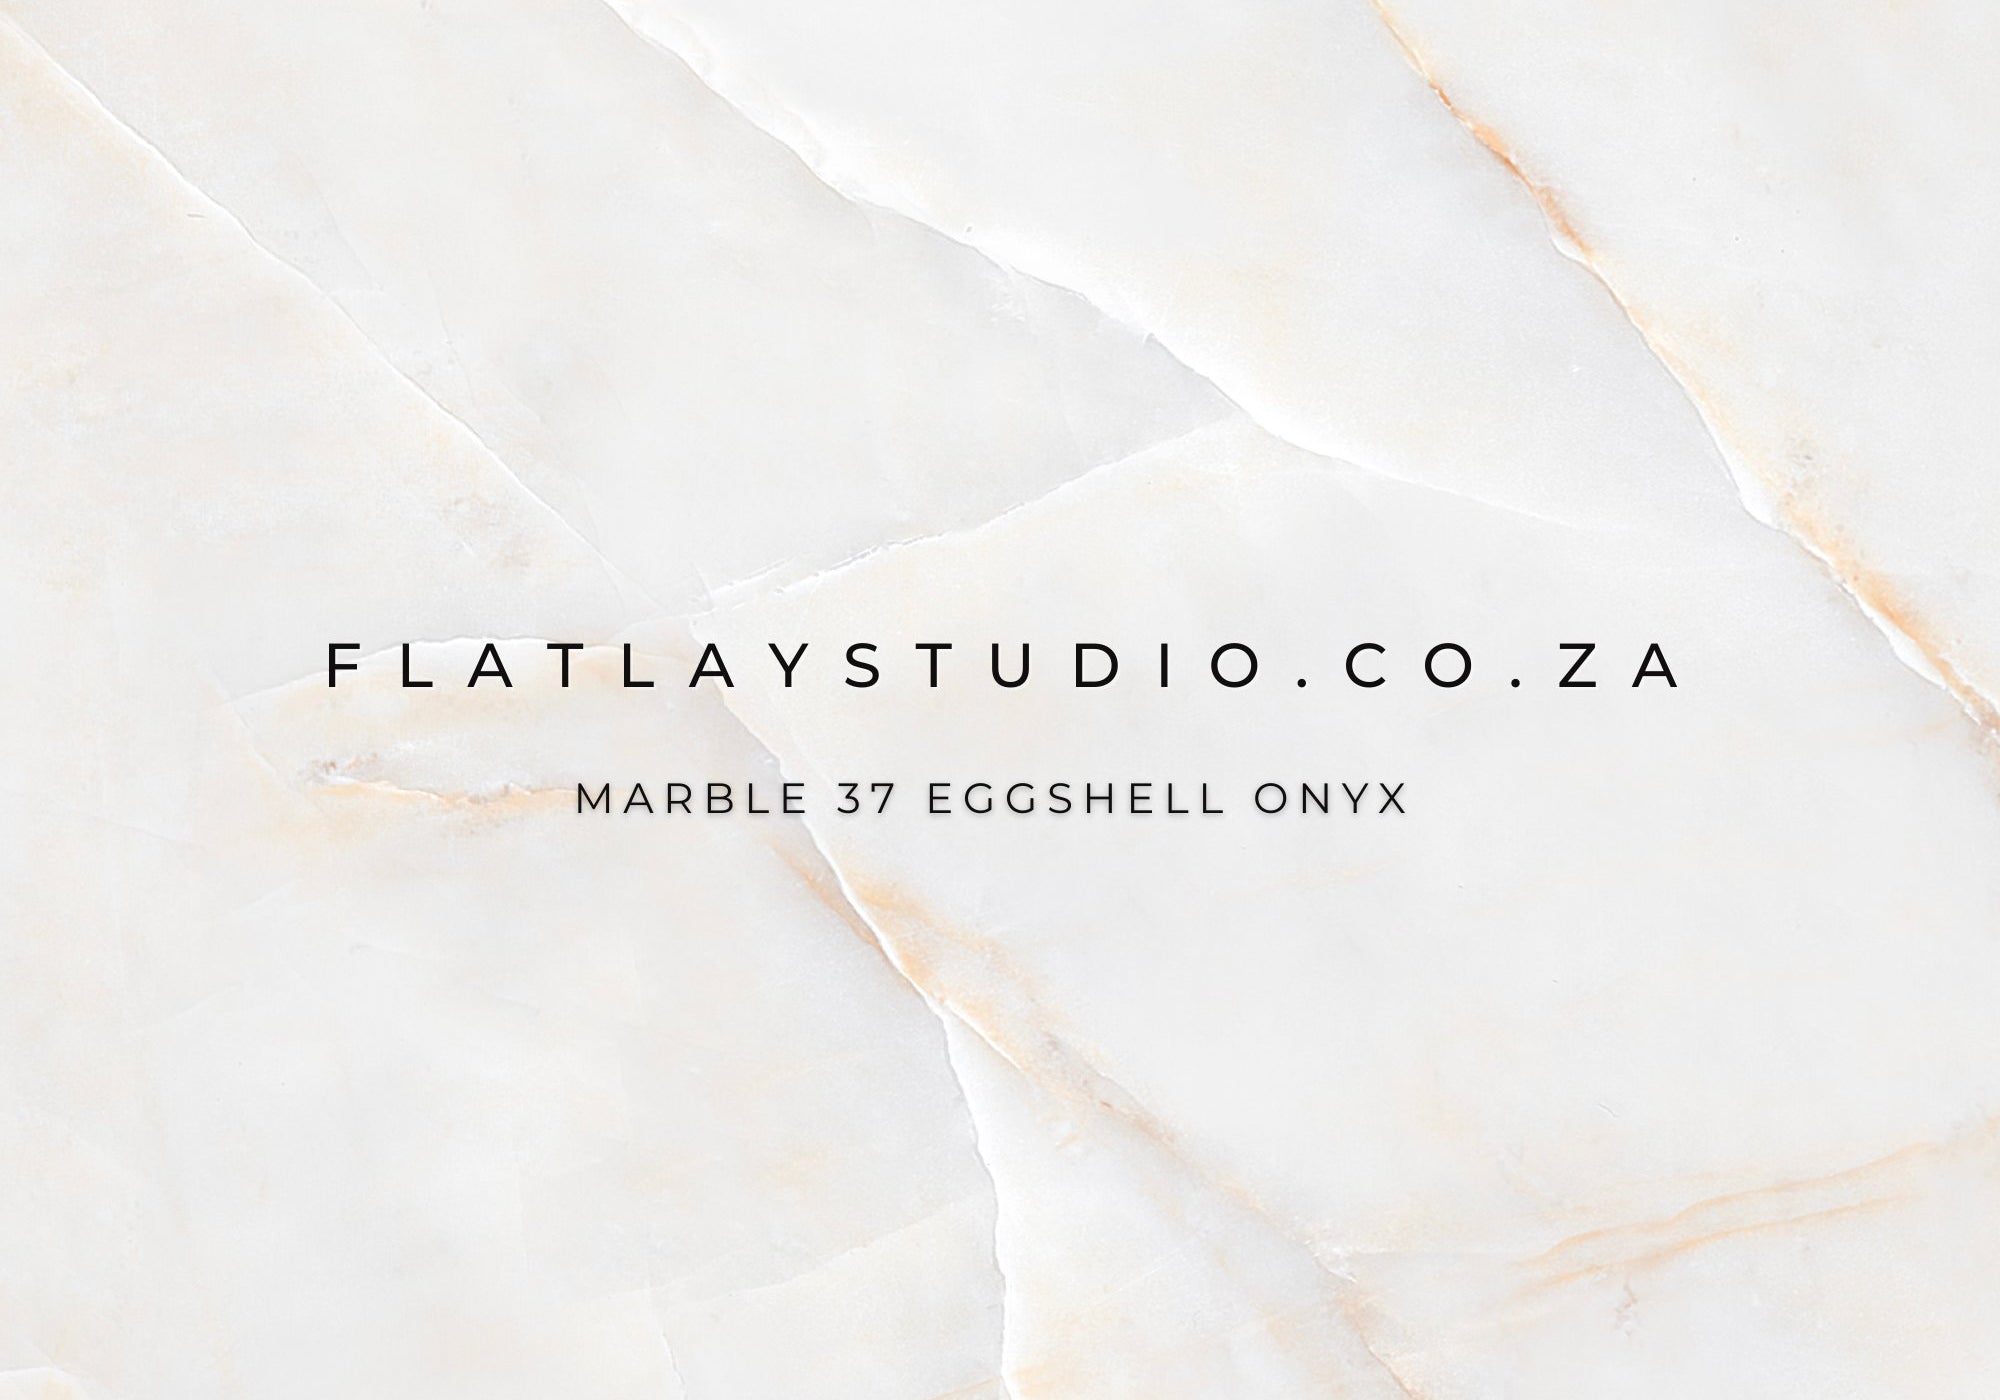 Marble 37 Eggshell Onyx - FlatlayStudio Flatlay Styling Board